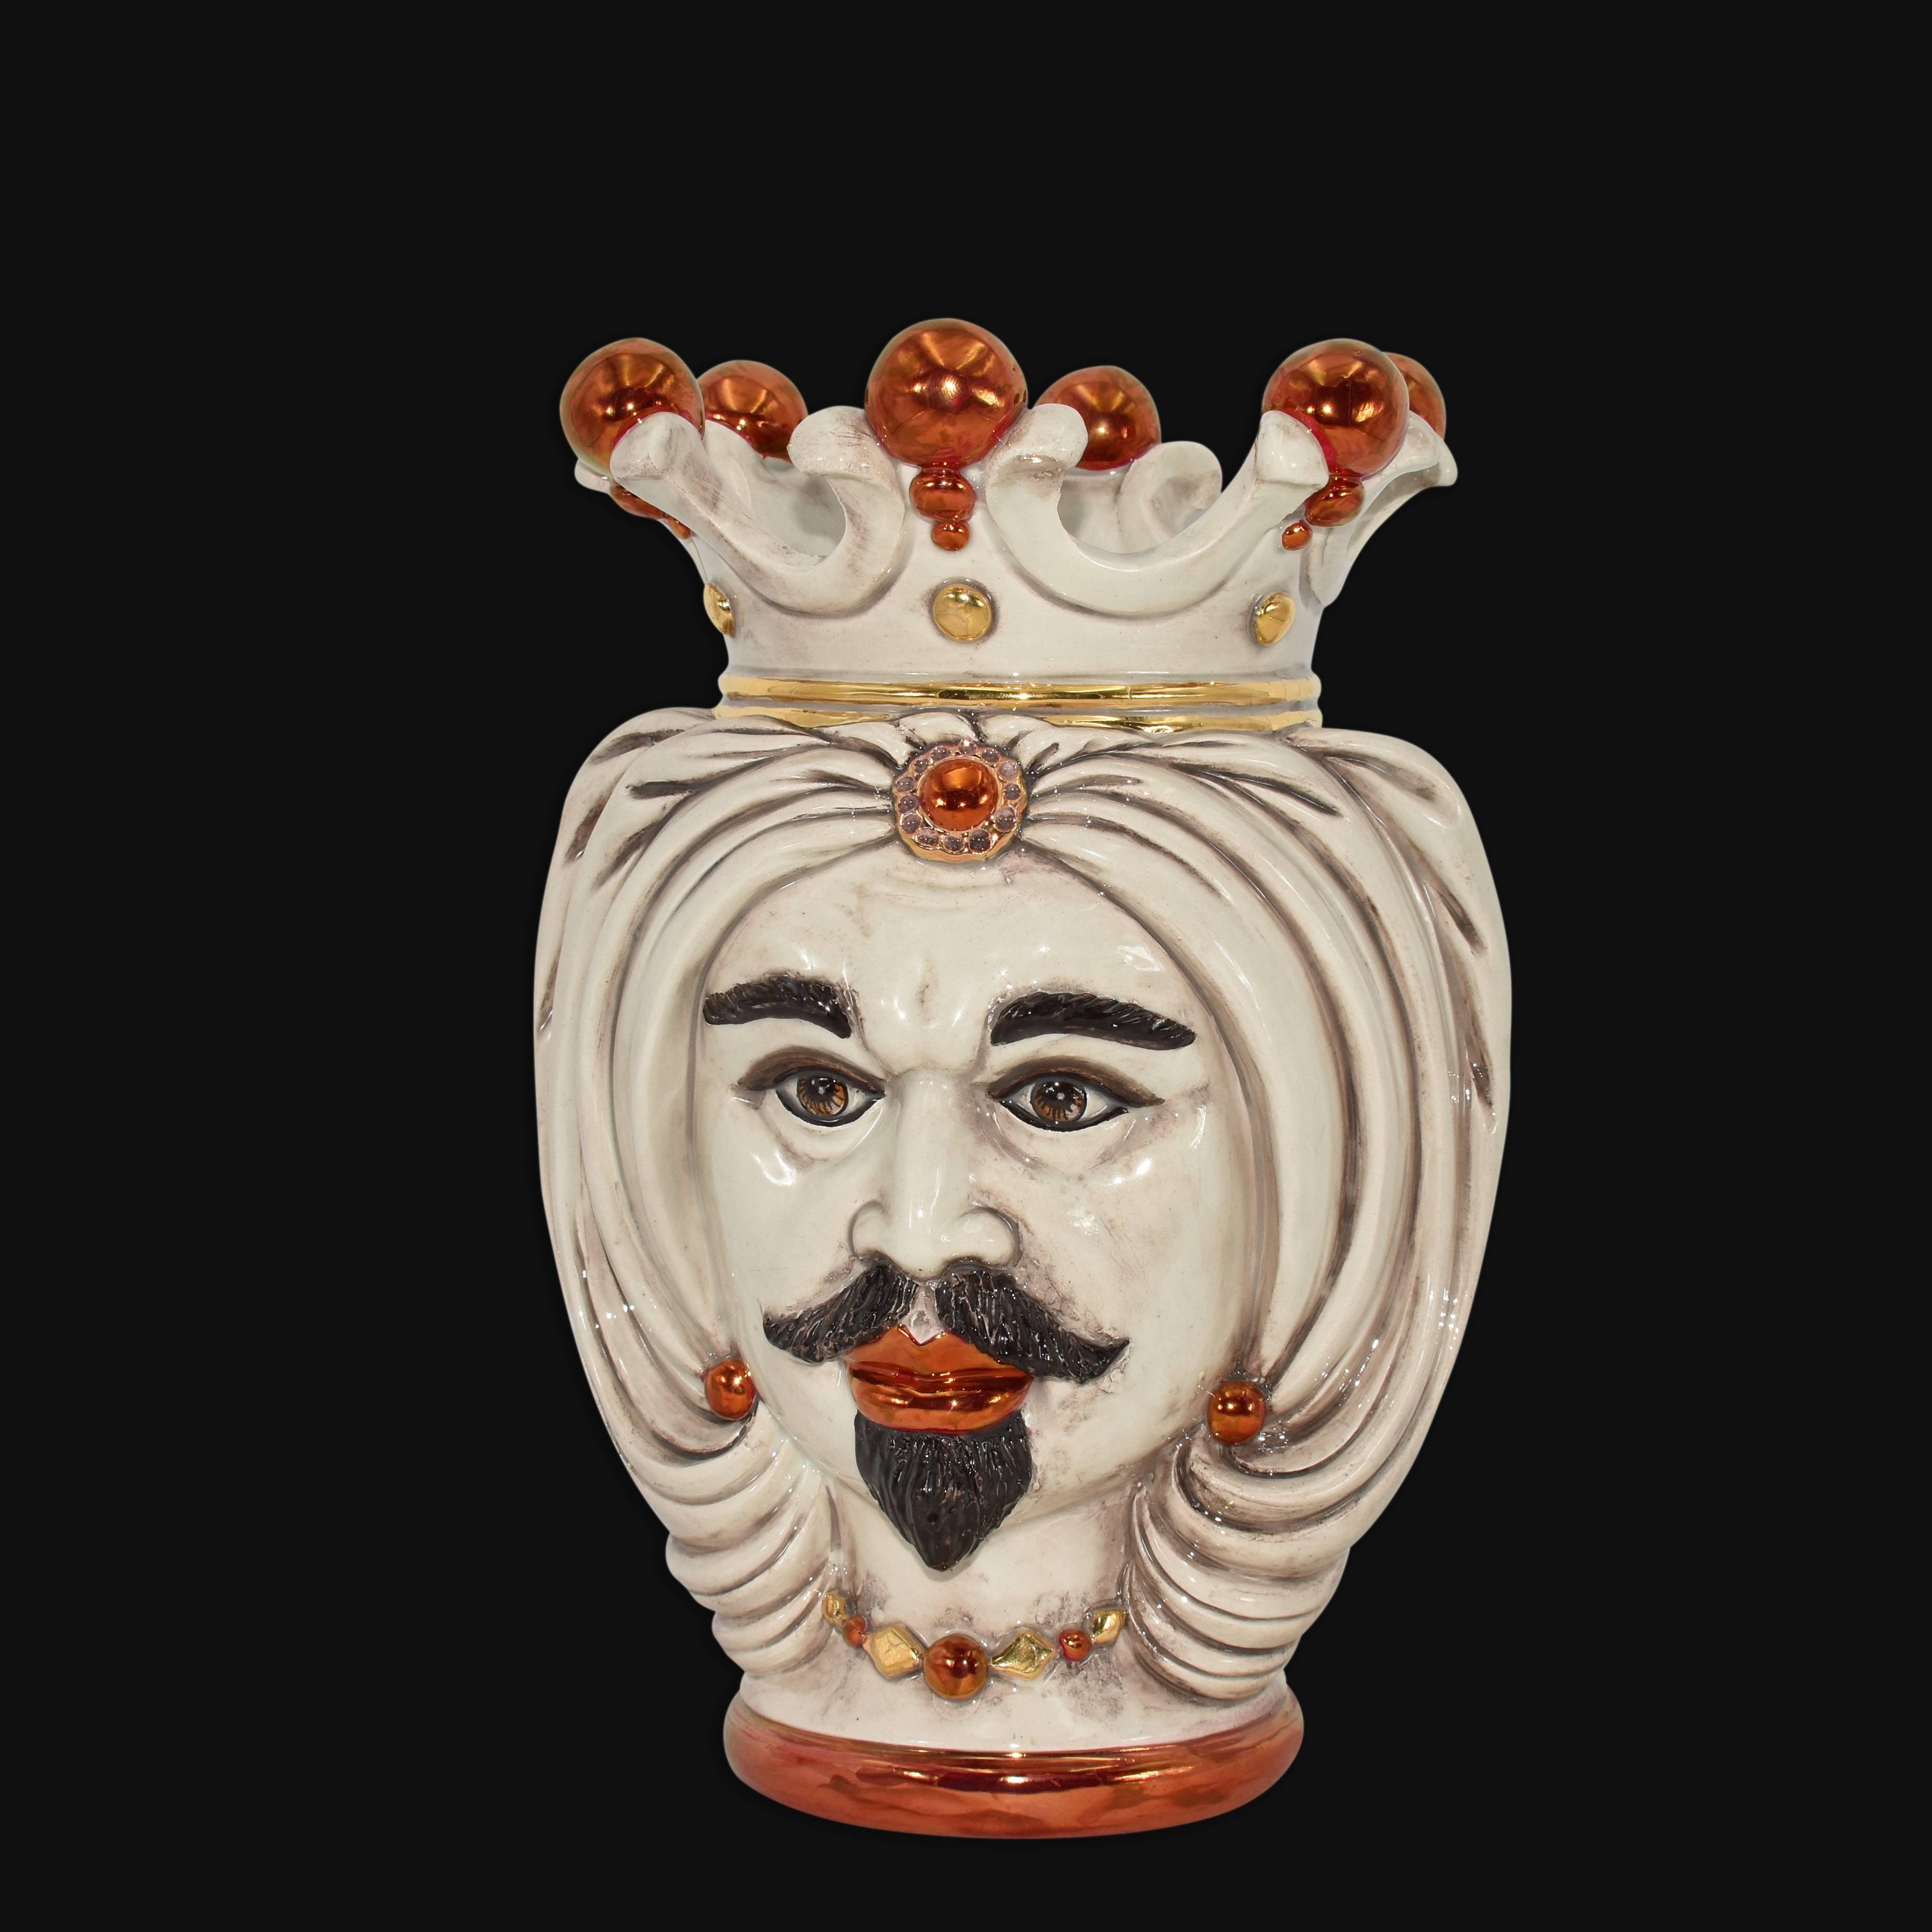 Testa h 25 turbante madreperla con oro e lustri maschio bianco - Ceramiche di Caltagirone Sofia